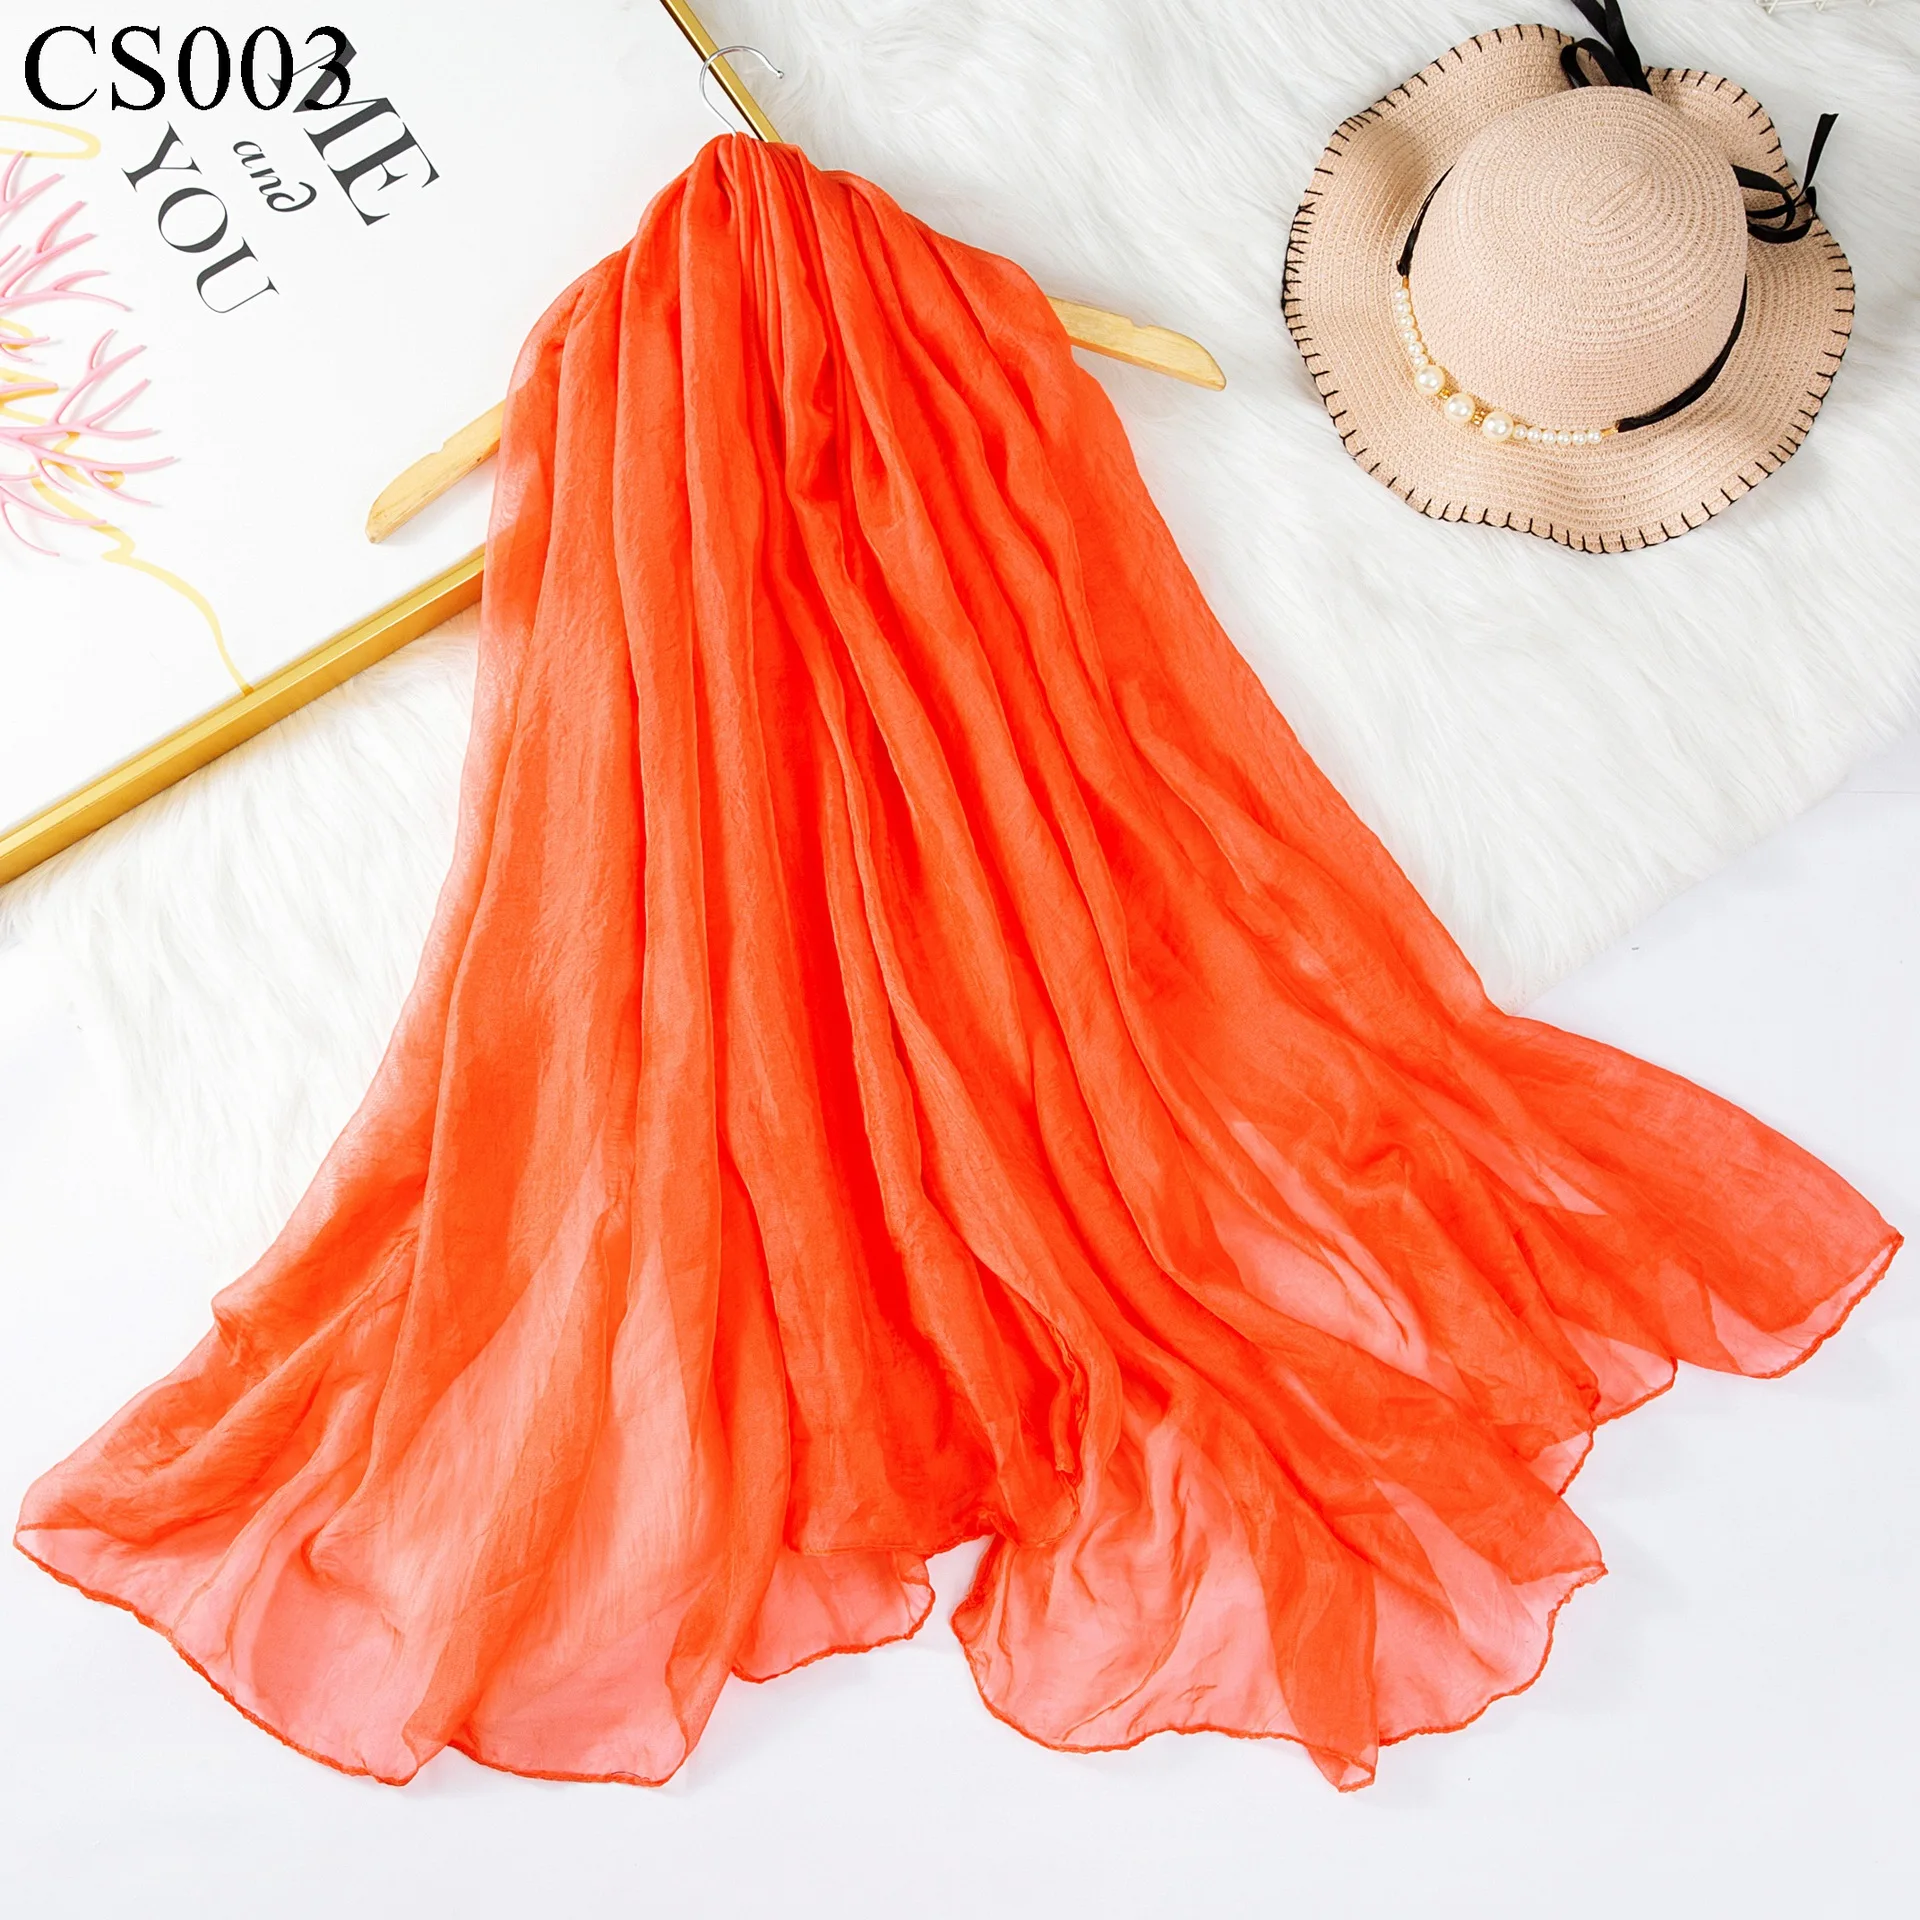 Мягкий шарф для женщин теплая шаль шарфы шифон длинный шарф шарфы пляжные Большие размеры шаль сплошной цвет танец шелк Handanas - Цвет: Orange